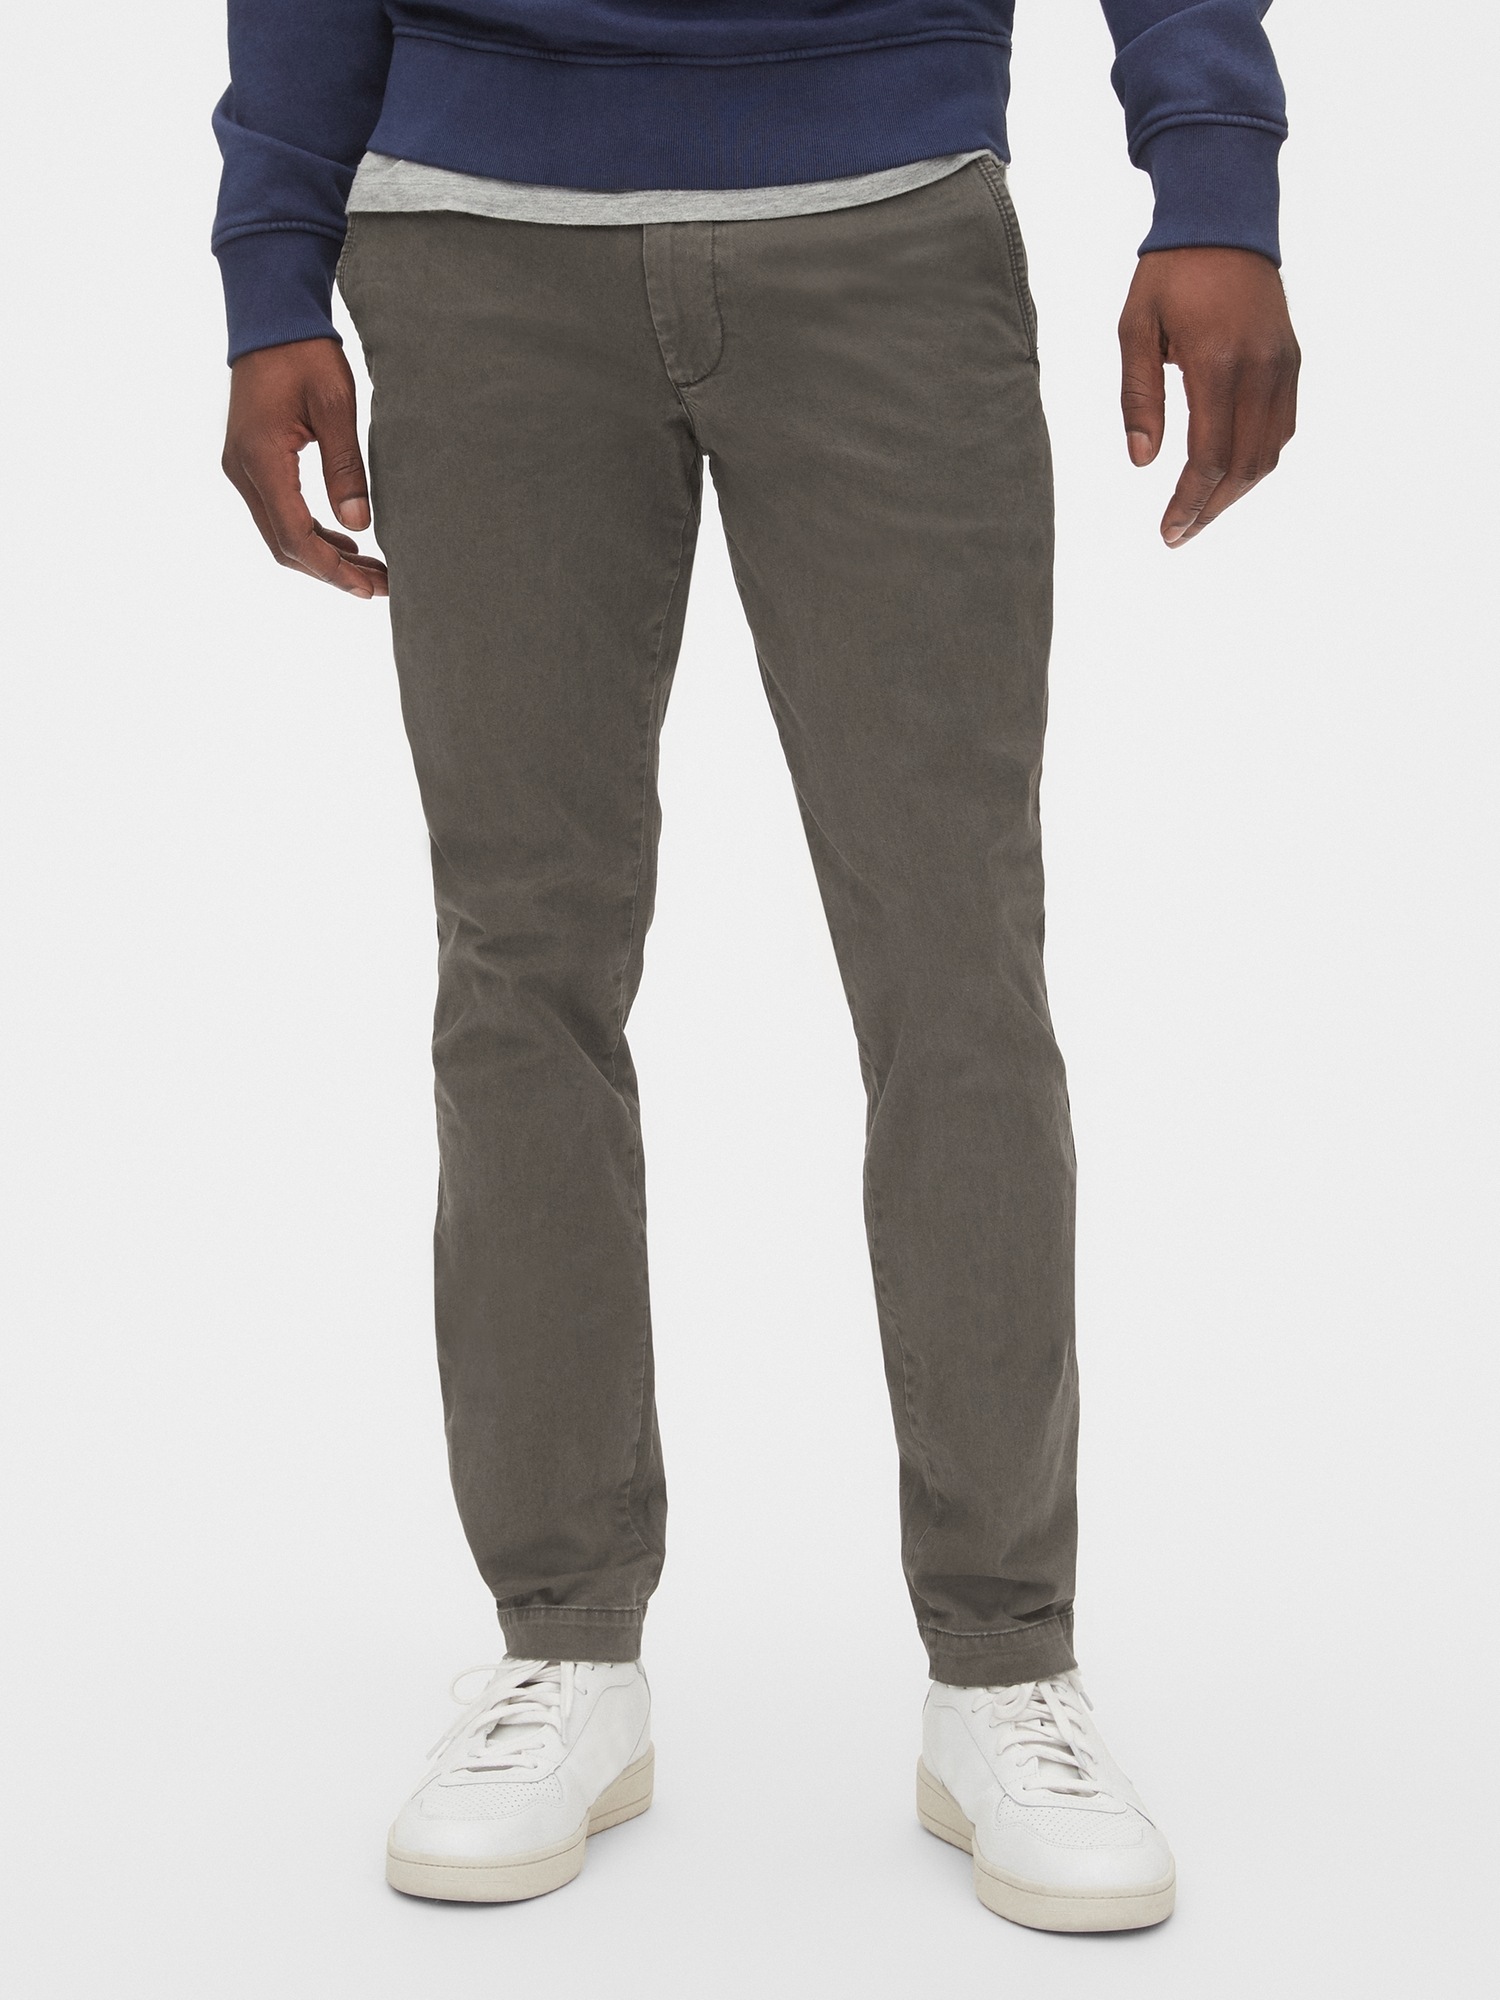 NWT Mens GAP GapFlex Essential Khakis Skinny Fit Pants Chino Stretch $59